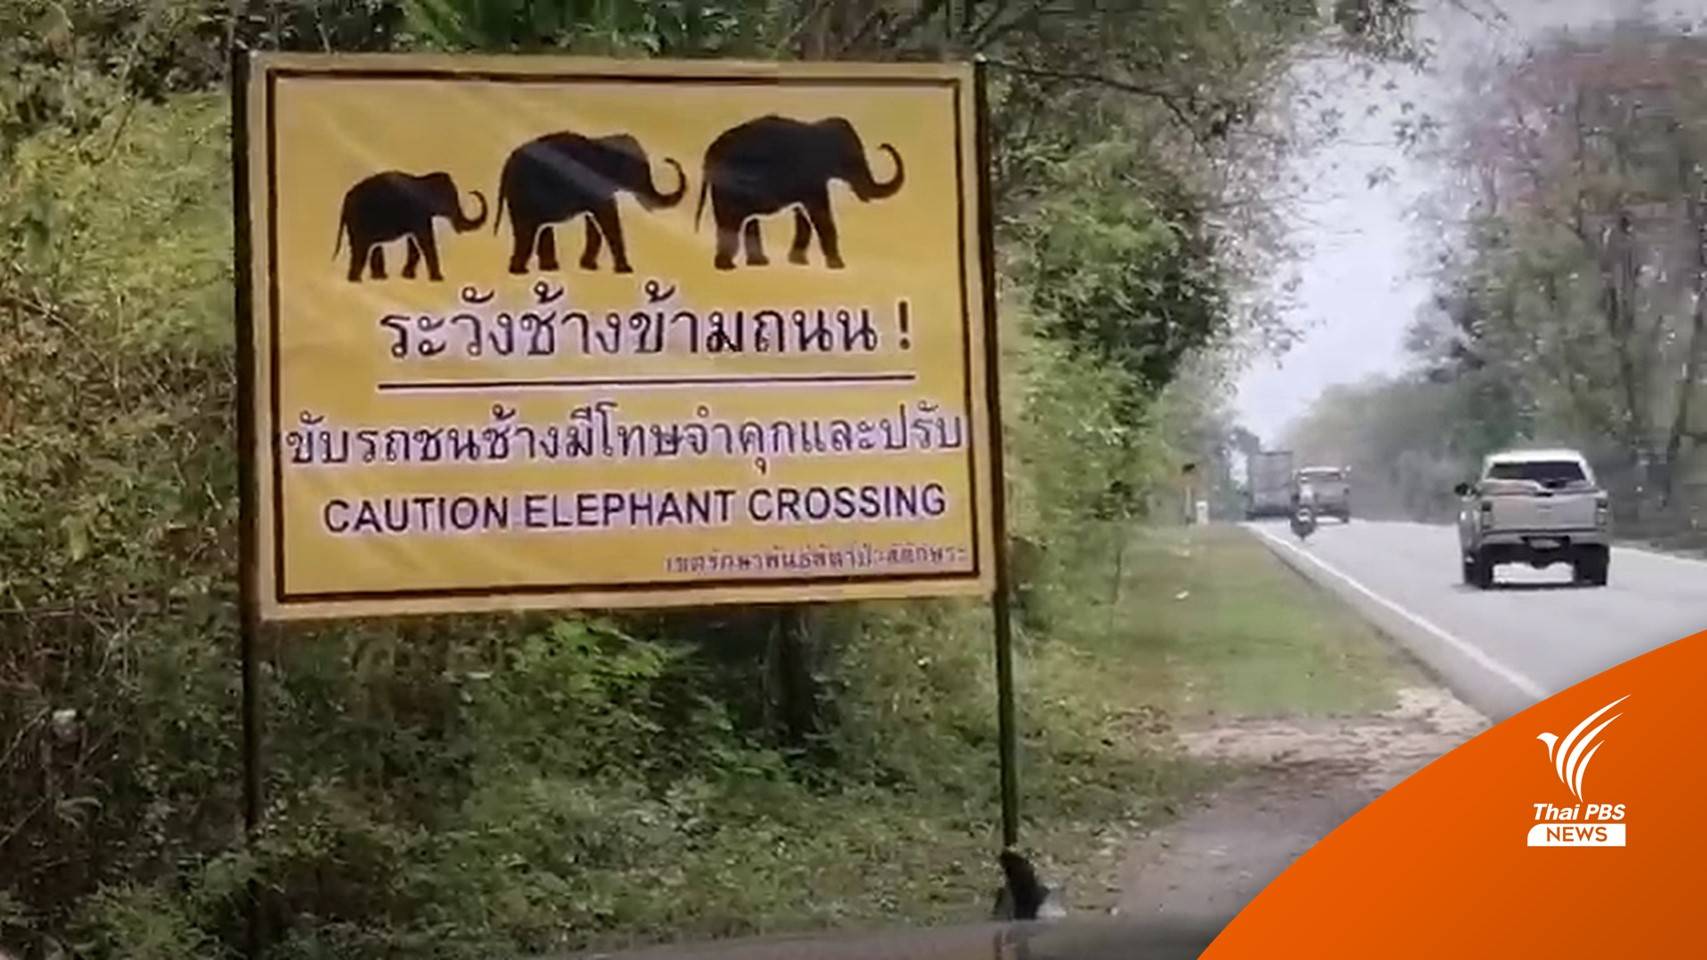 กรมอุทยานฯ เตือนระวัง "ช้างป่าสลักพระ" ขับรถชนมีโทษ